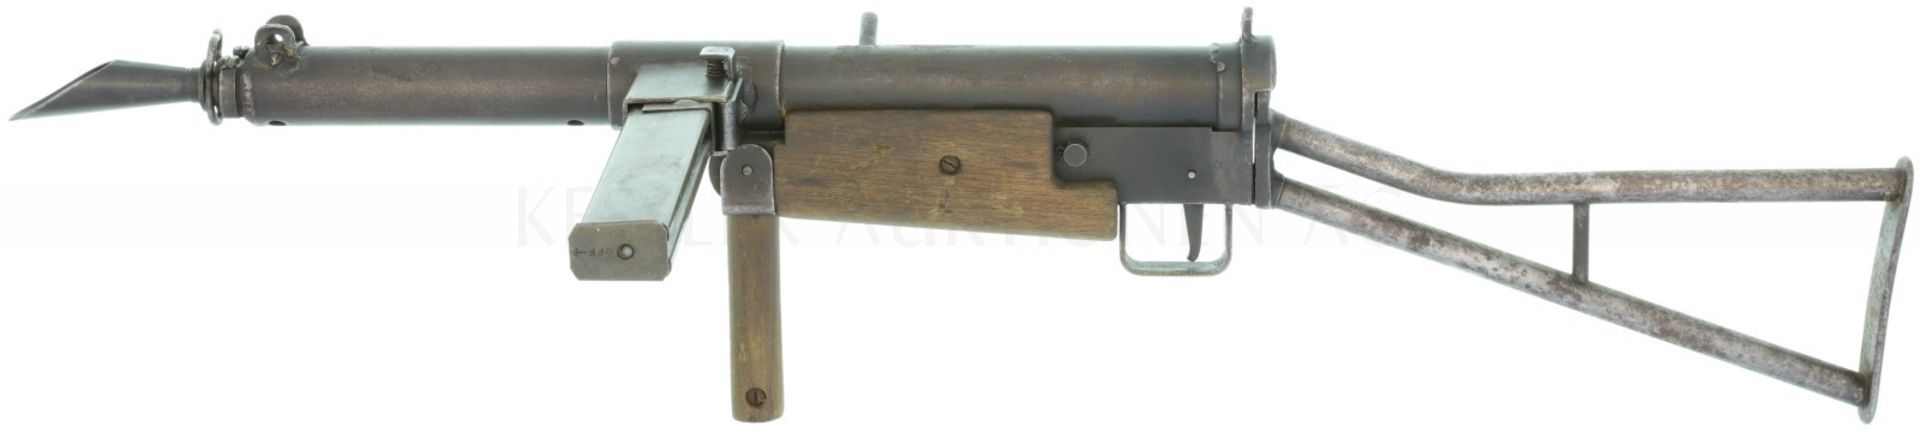 Maschinenpistole, Sten MKI, Kal. 9mm Para